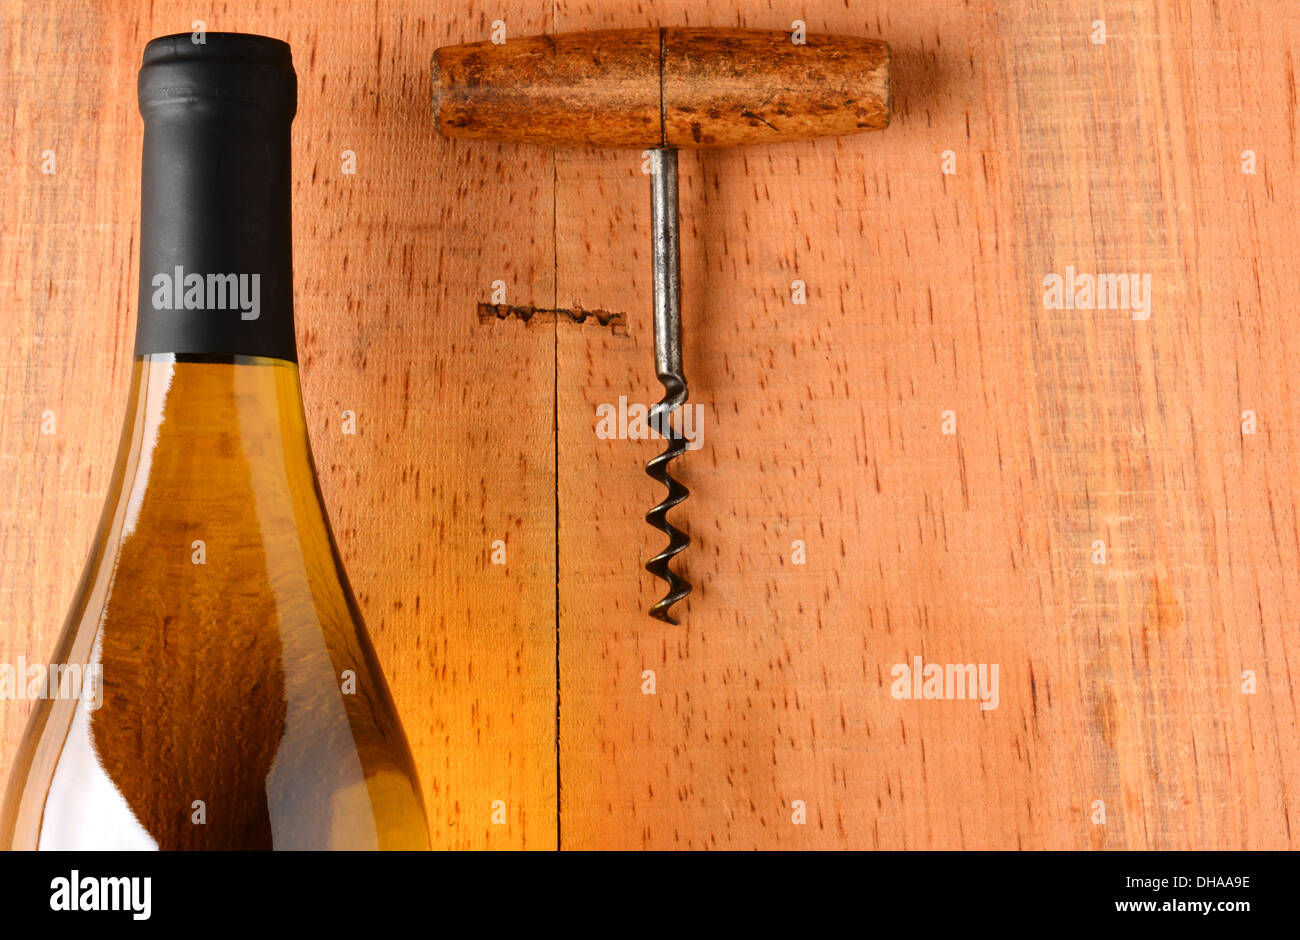 Primo piano di un Chardonnay bottiglia di vino e un cavatappi su un rustico di superficie di legno. La bottiglia non ha alcuna etichetta Foto Stock